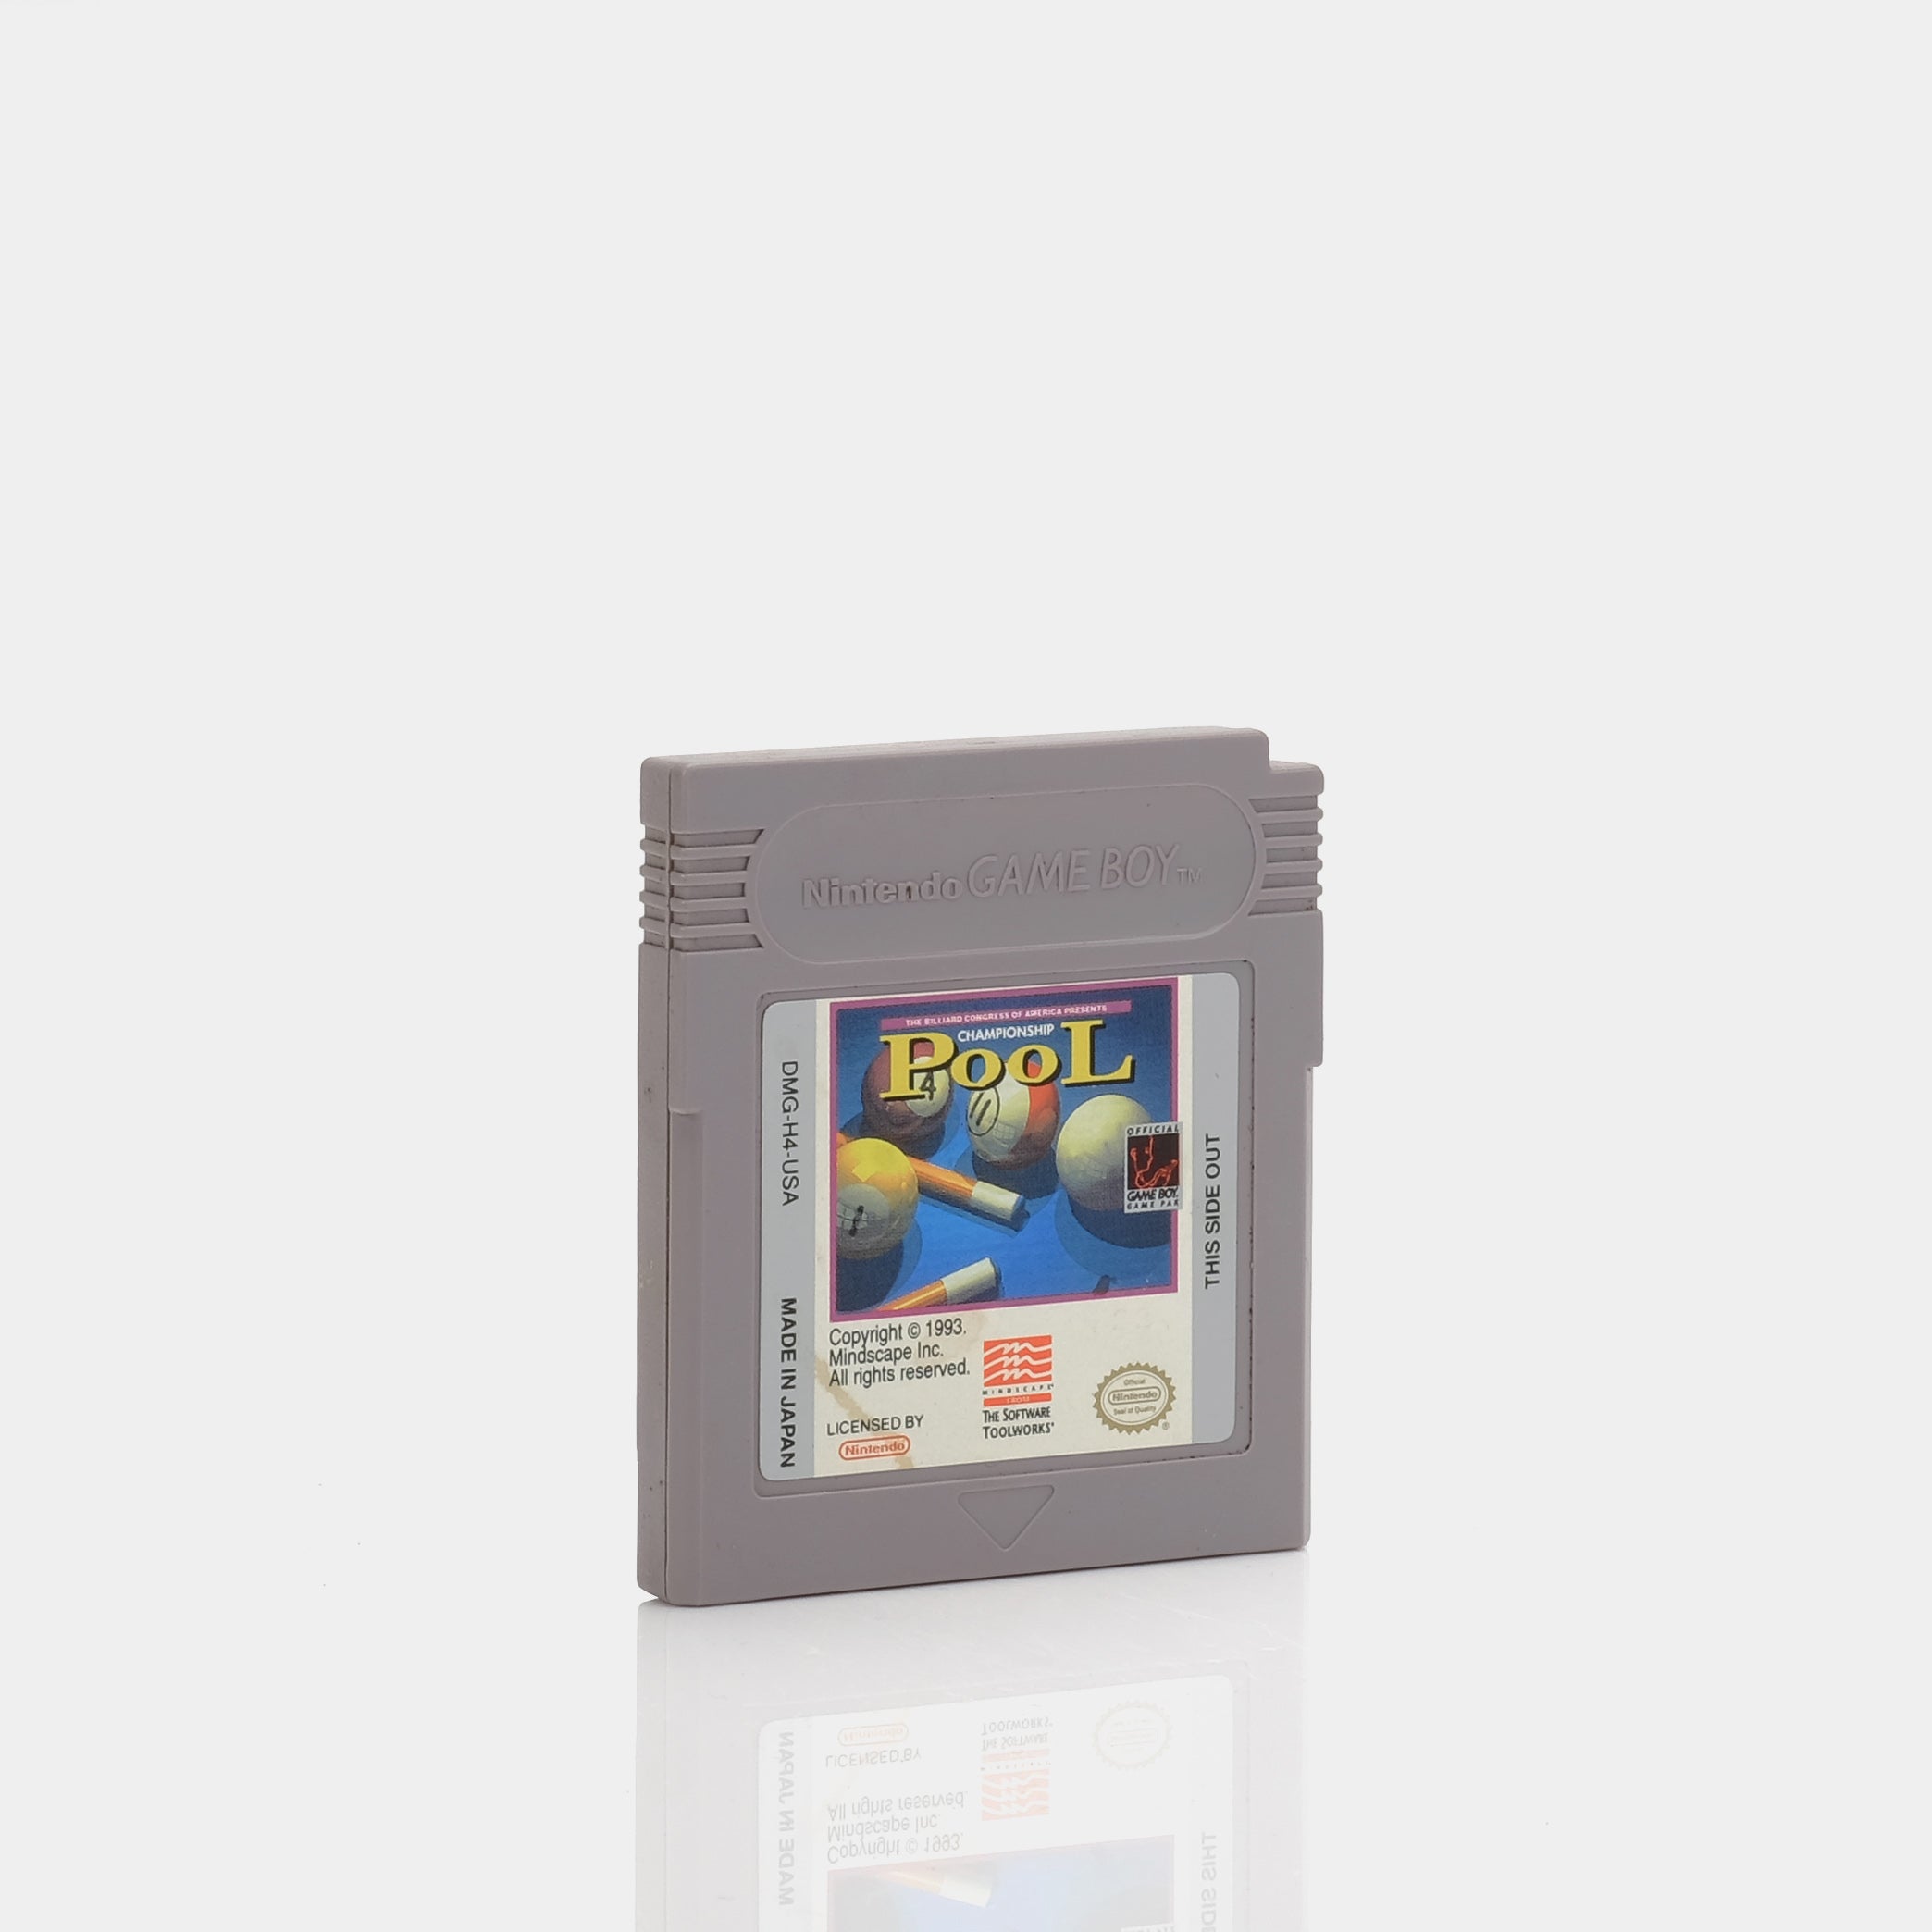 Championship Pool (1993) Game Boy Game